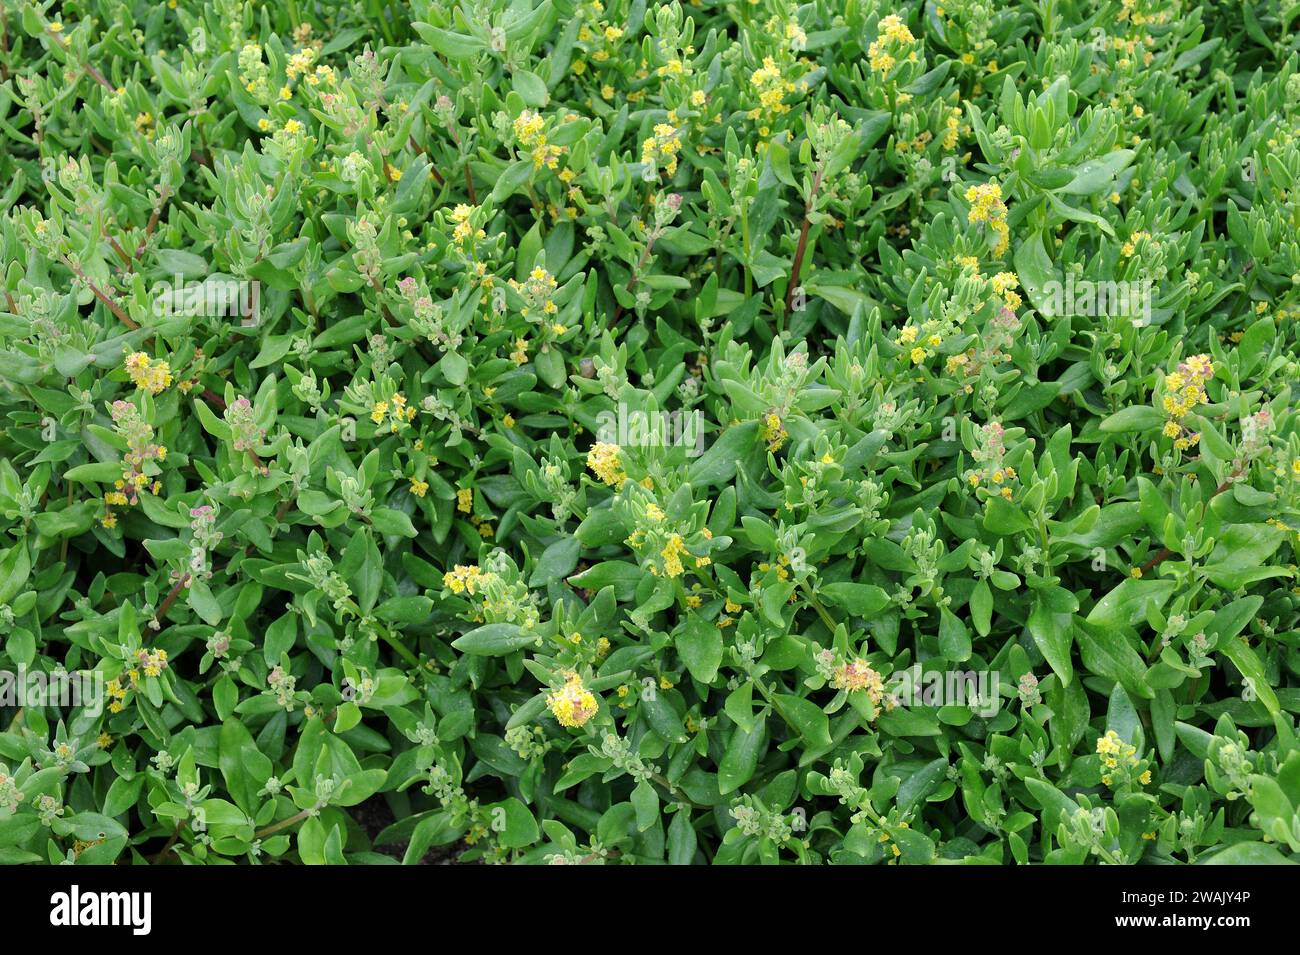 Dune spinach or sea spinach (Tetragonia decumbens) is an edible shrub ...